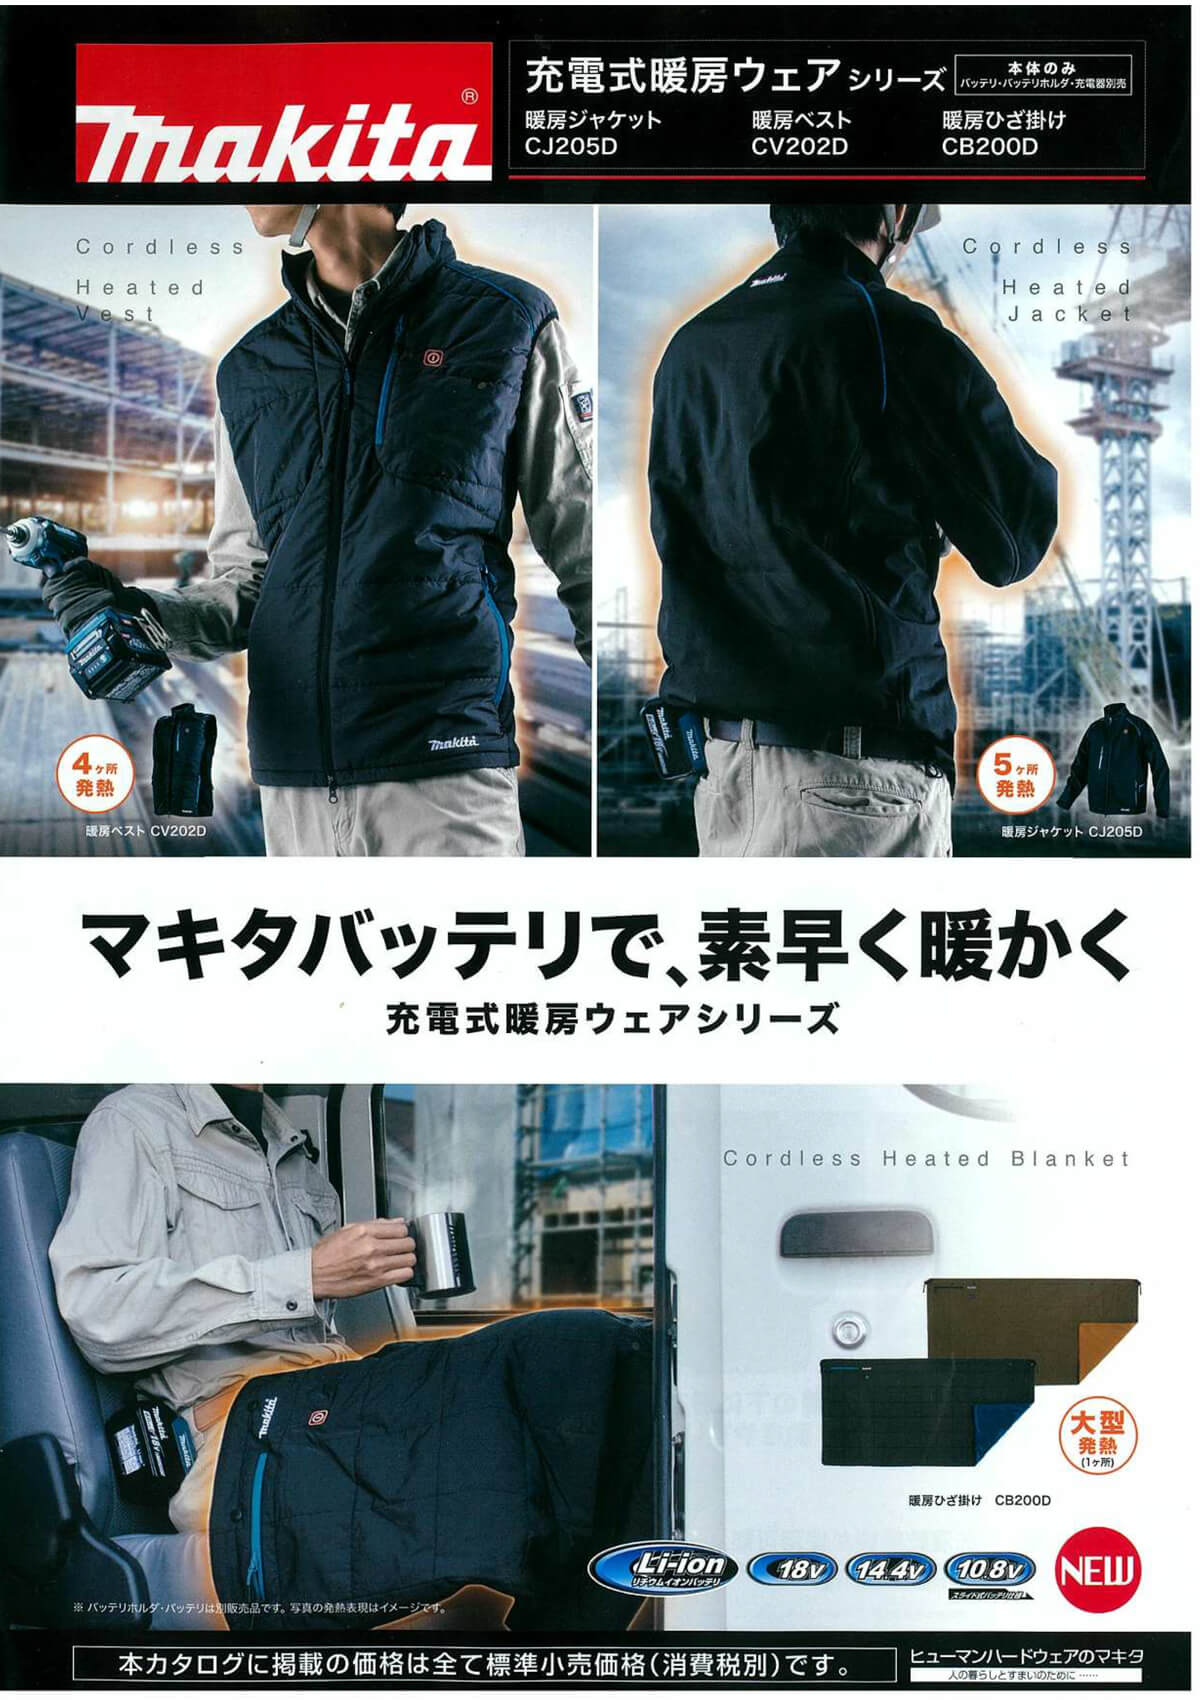 マキタ CJ205DZ 充電式暖房ジャケット【徹底解説】